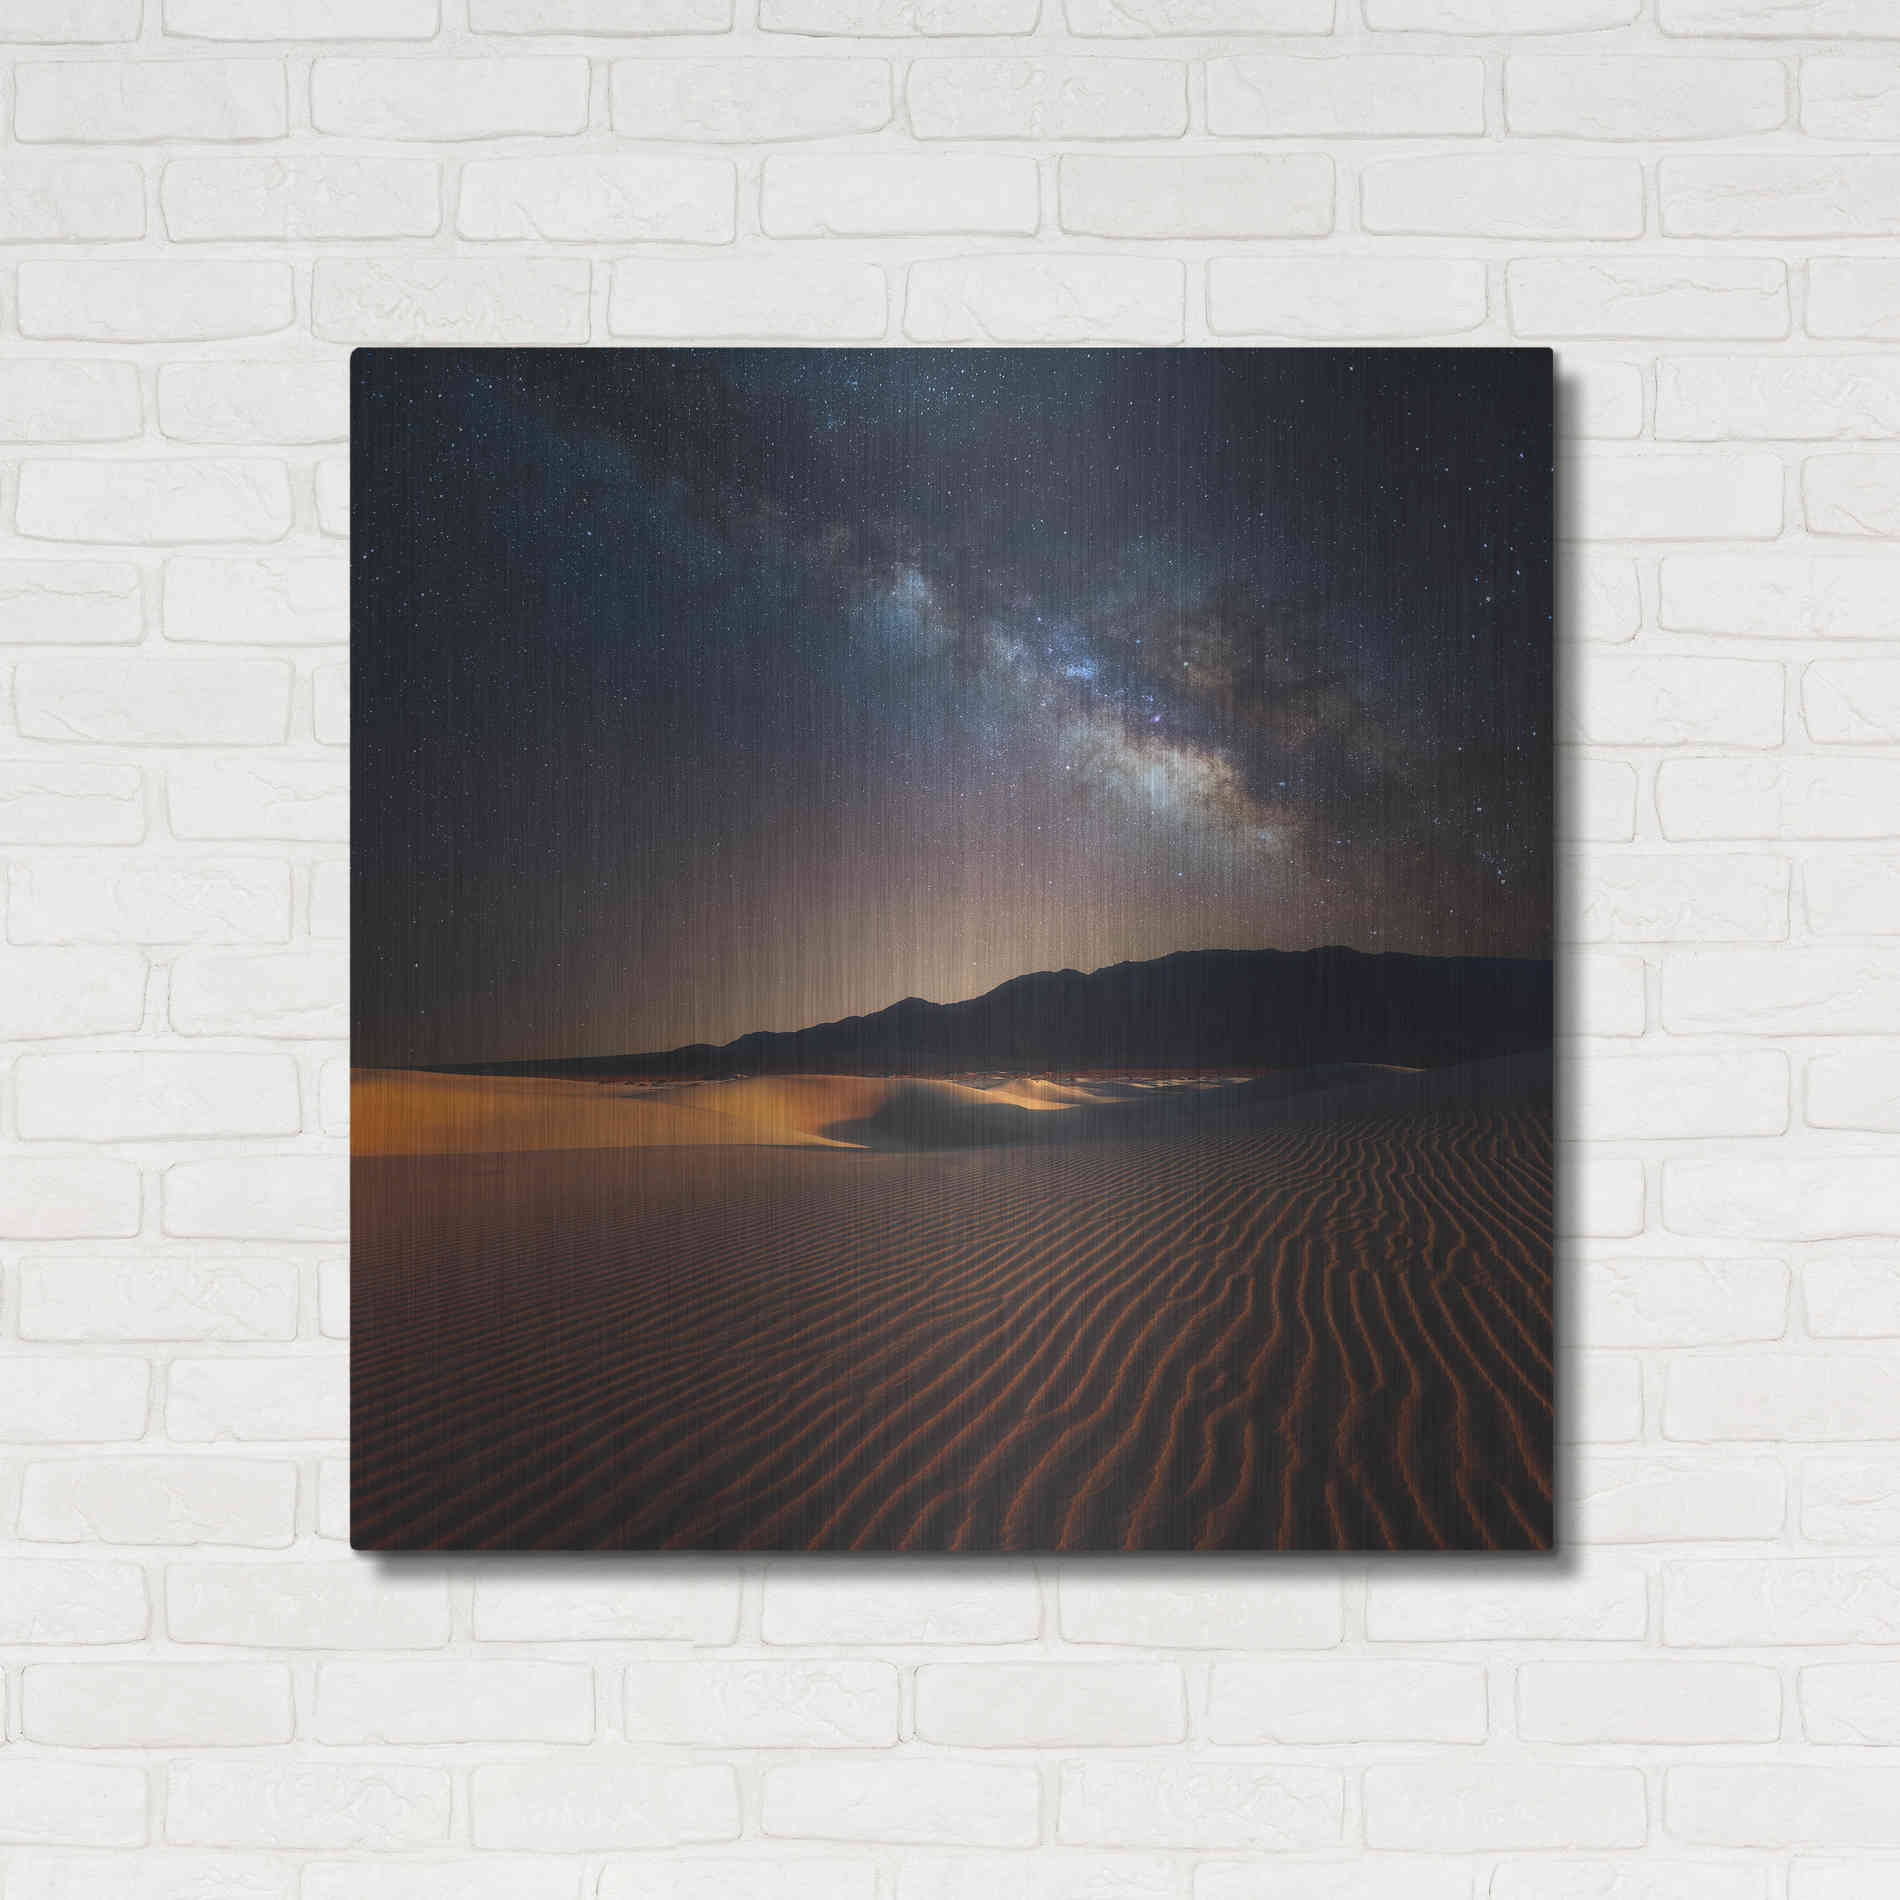 Luxe Metal Art 'Milky Way Over Mesquite Dunes' by Darren White, Metal Wall Art,36x36